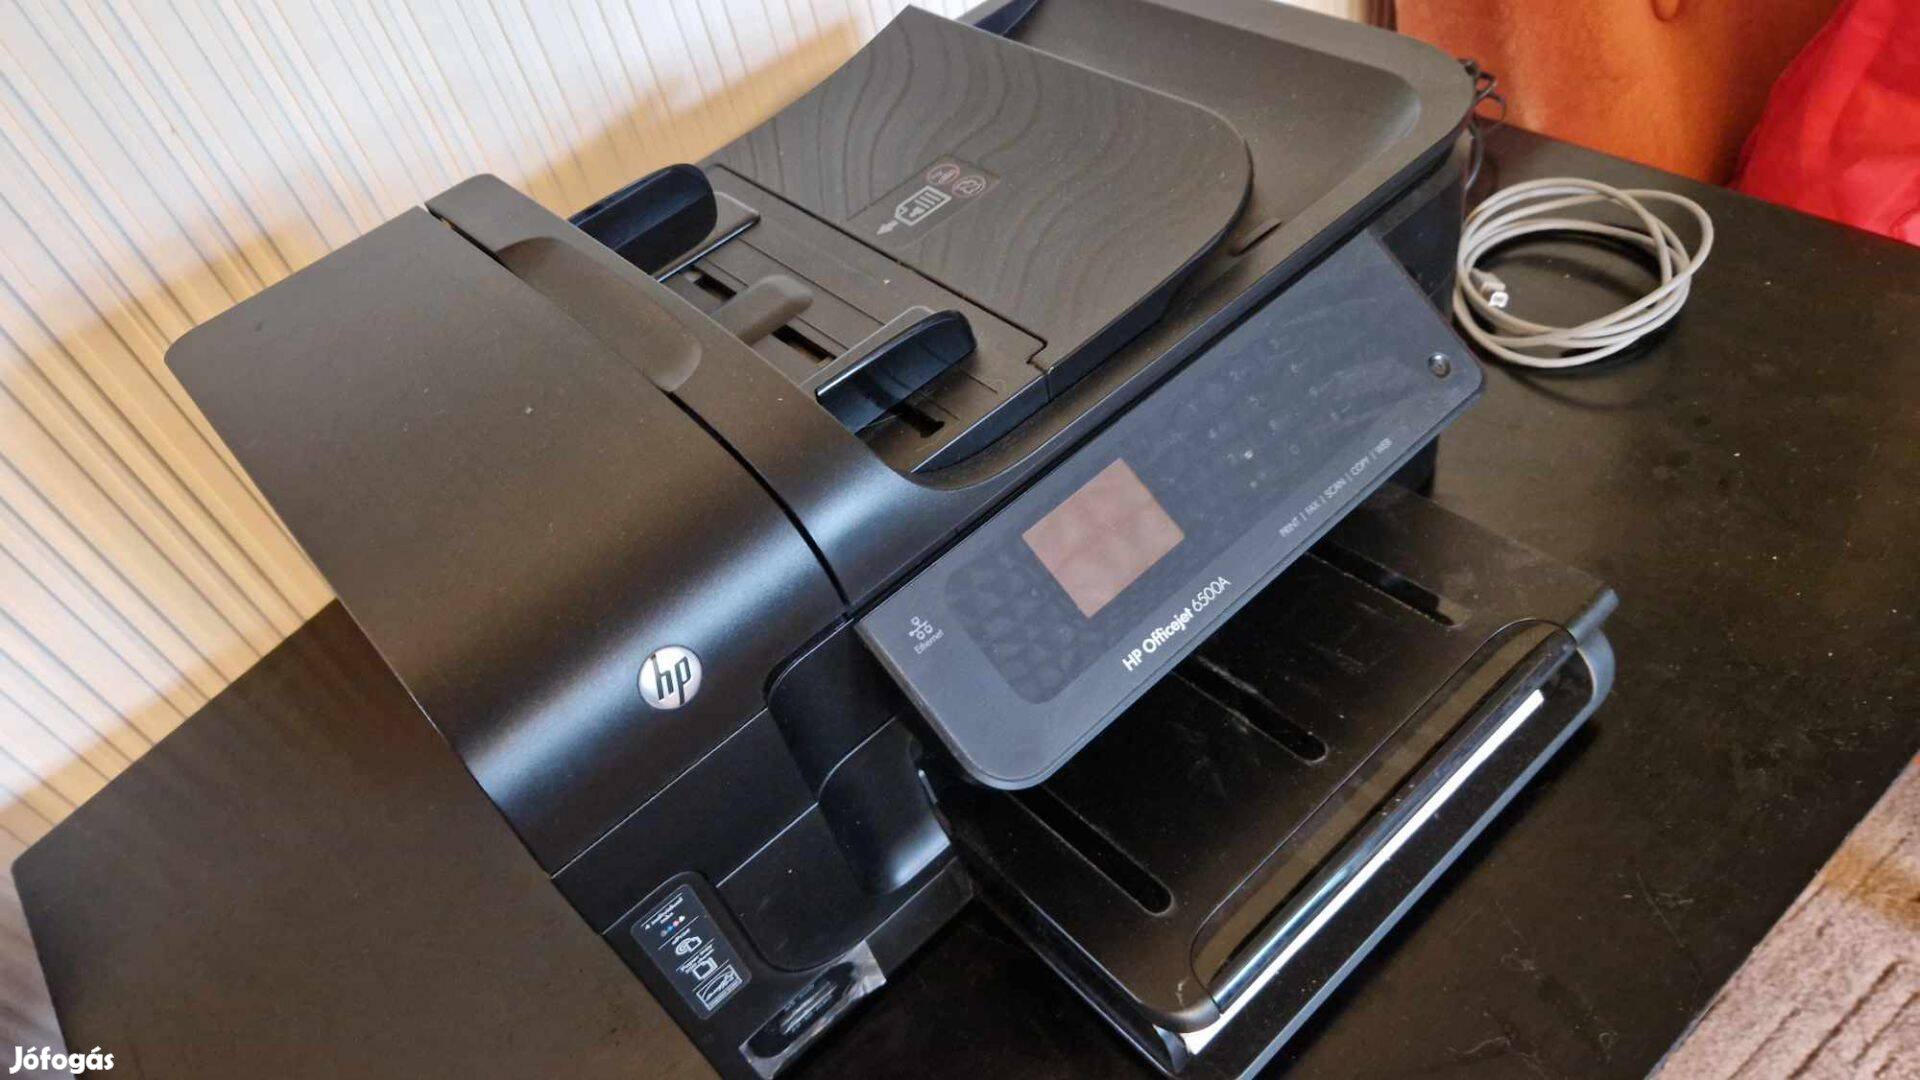 HP Officejet 6500A e-többfunkciós nyomtató